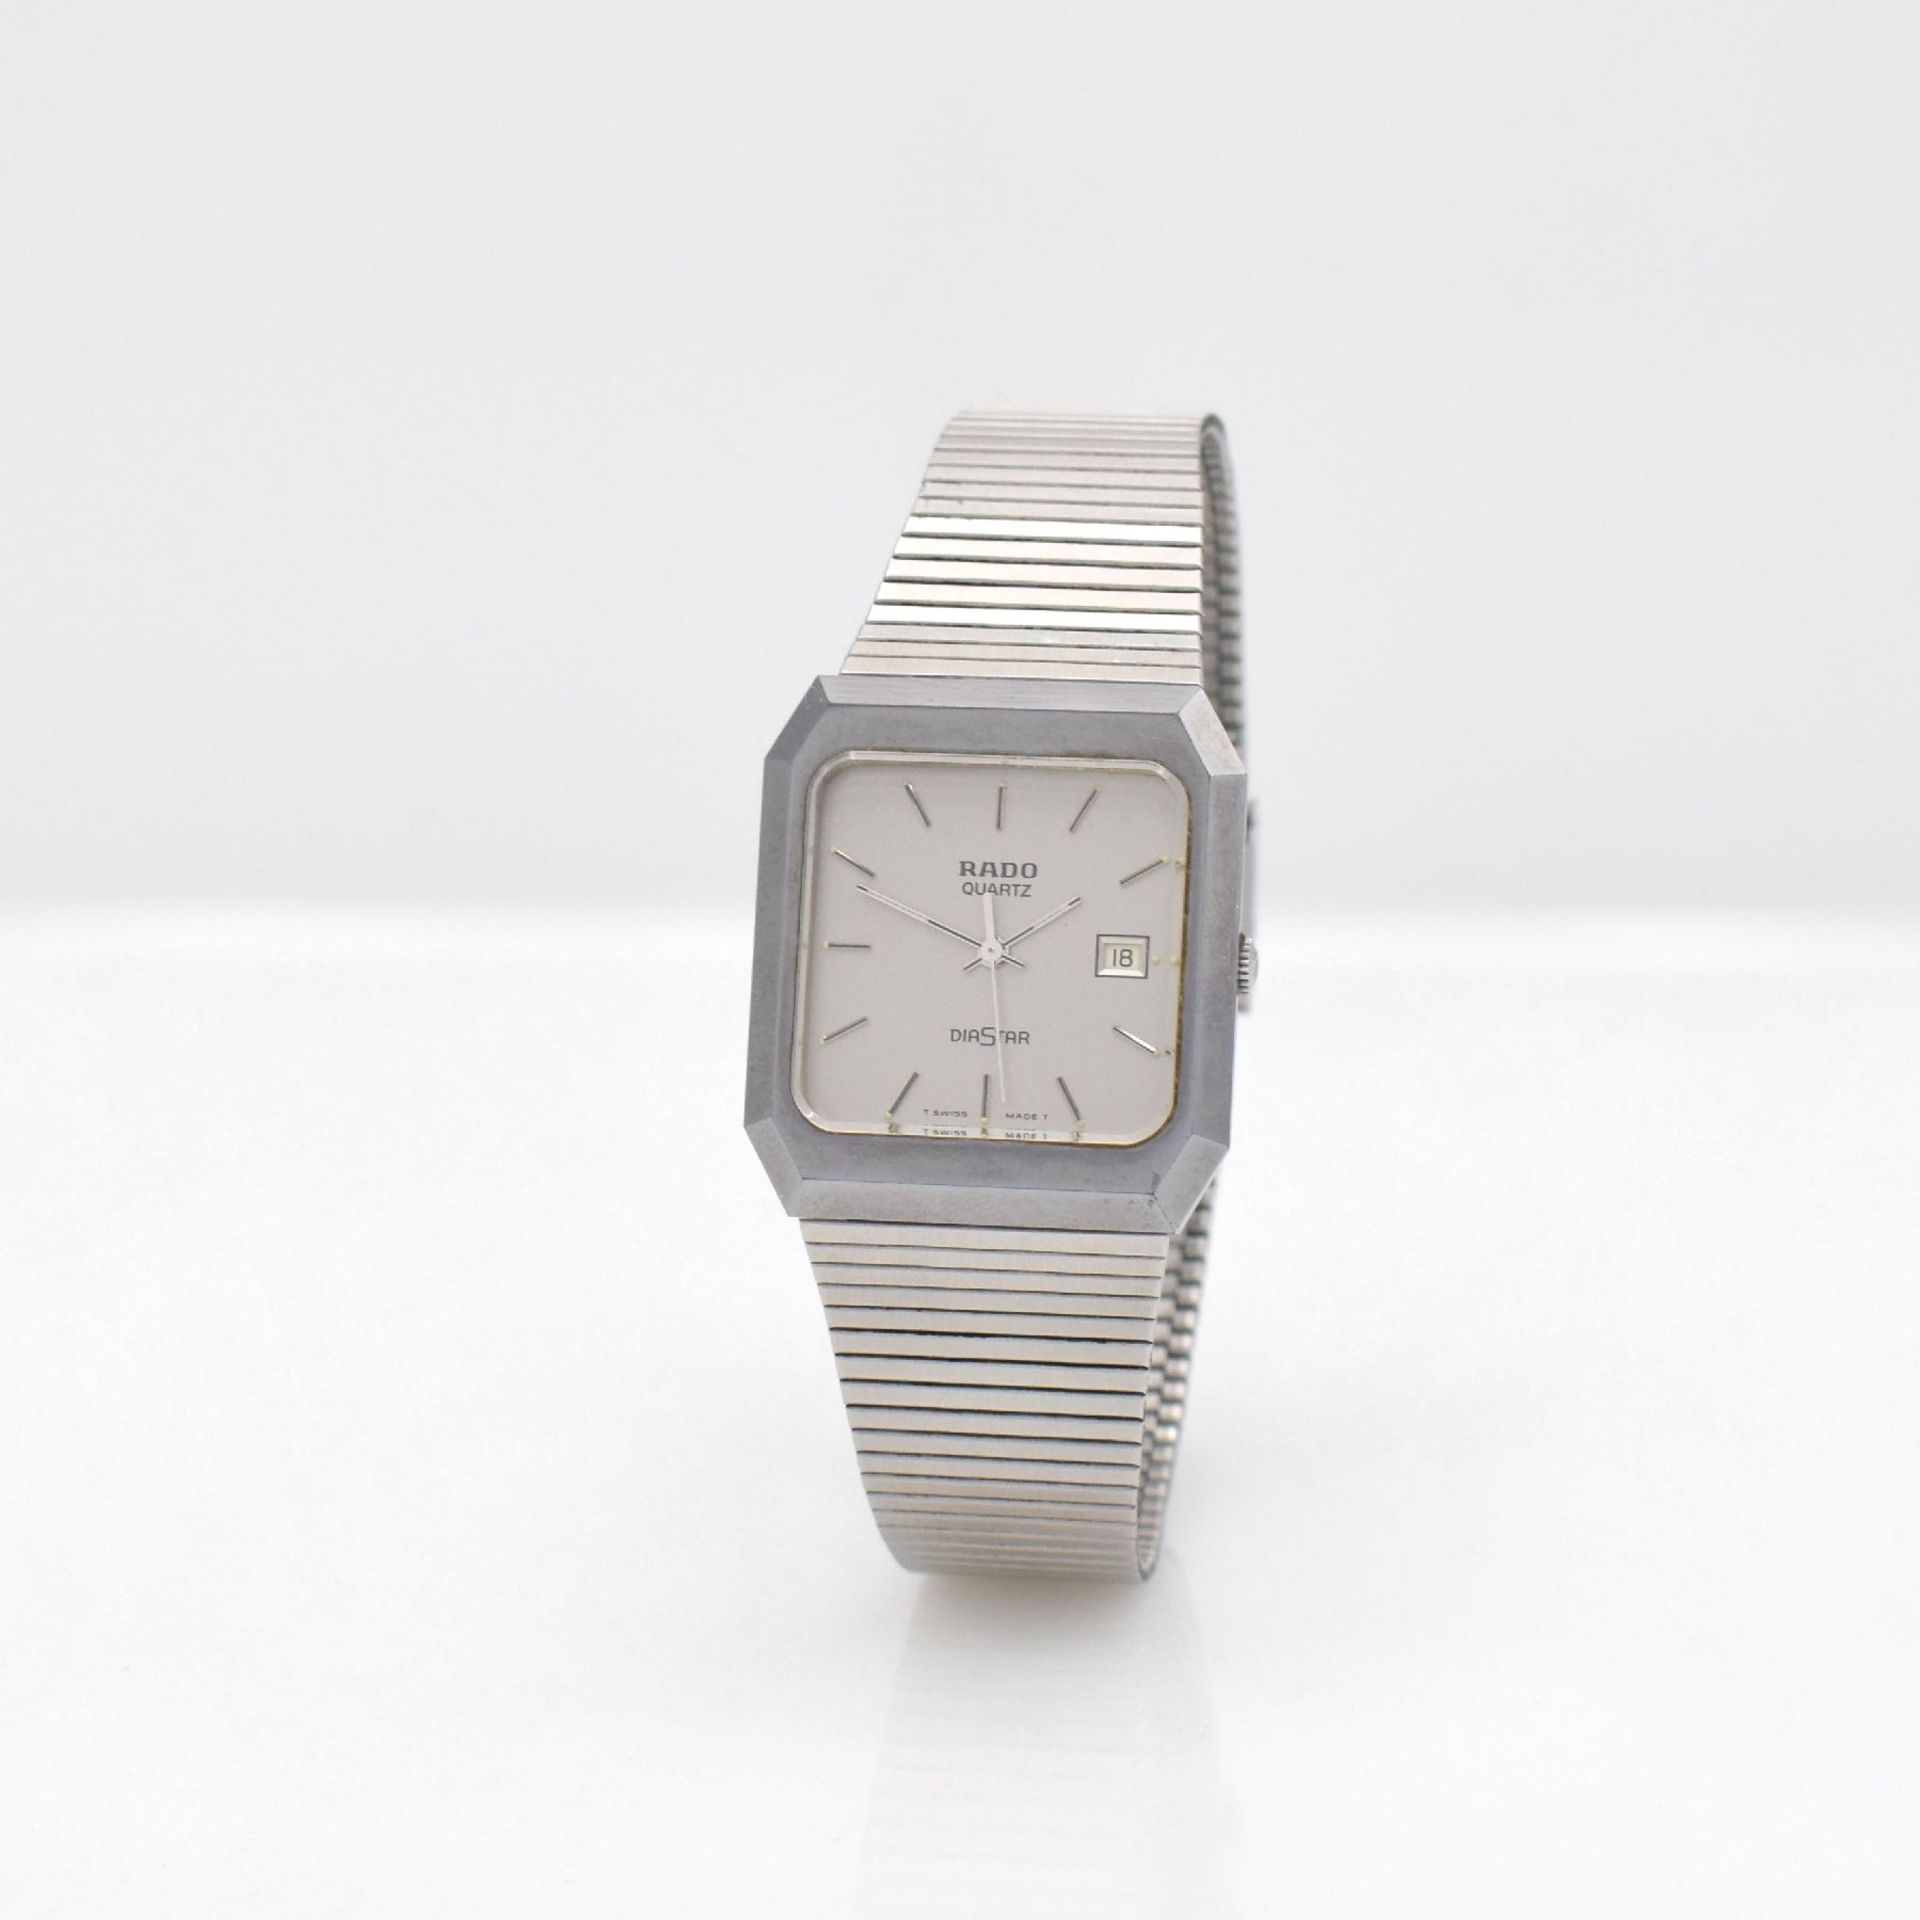 RADO Diastar Armbanduhr in Stahl/Stahlband, Schweiz um 1980, quarz, gedr. Stahlgeh. m. kratz- - Bild 3 aus 7